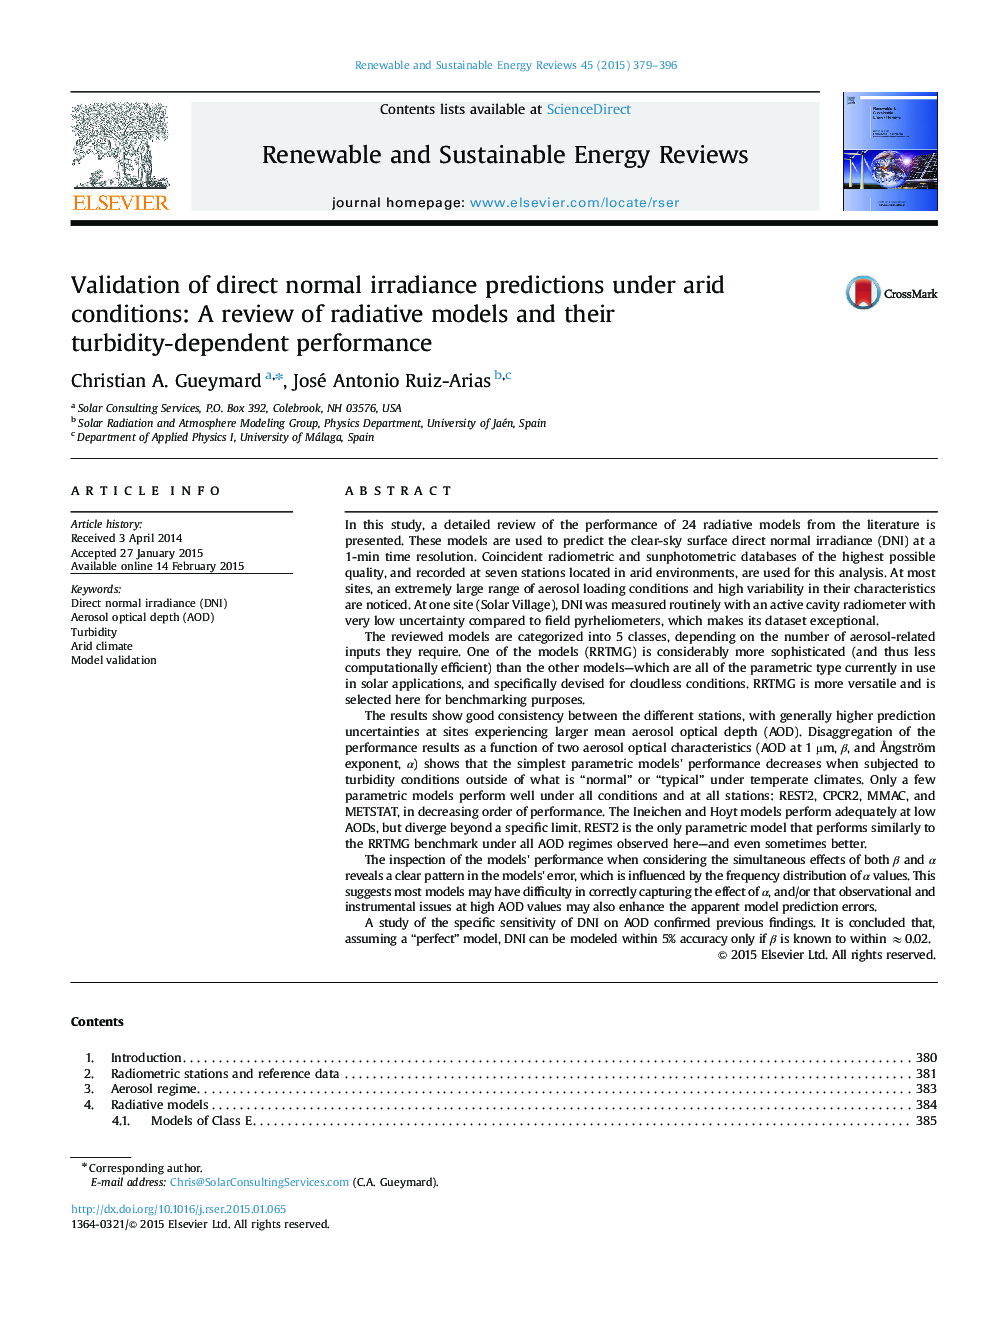 اعتبار پیش بینی های مستقیم عادی در شرایط خشکسالی: بررسی مدل های تابشی و عملکرد وابسته به کدورت آنها 